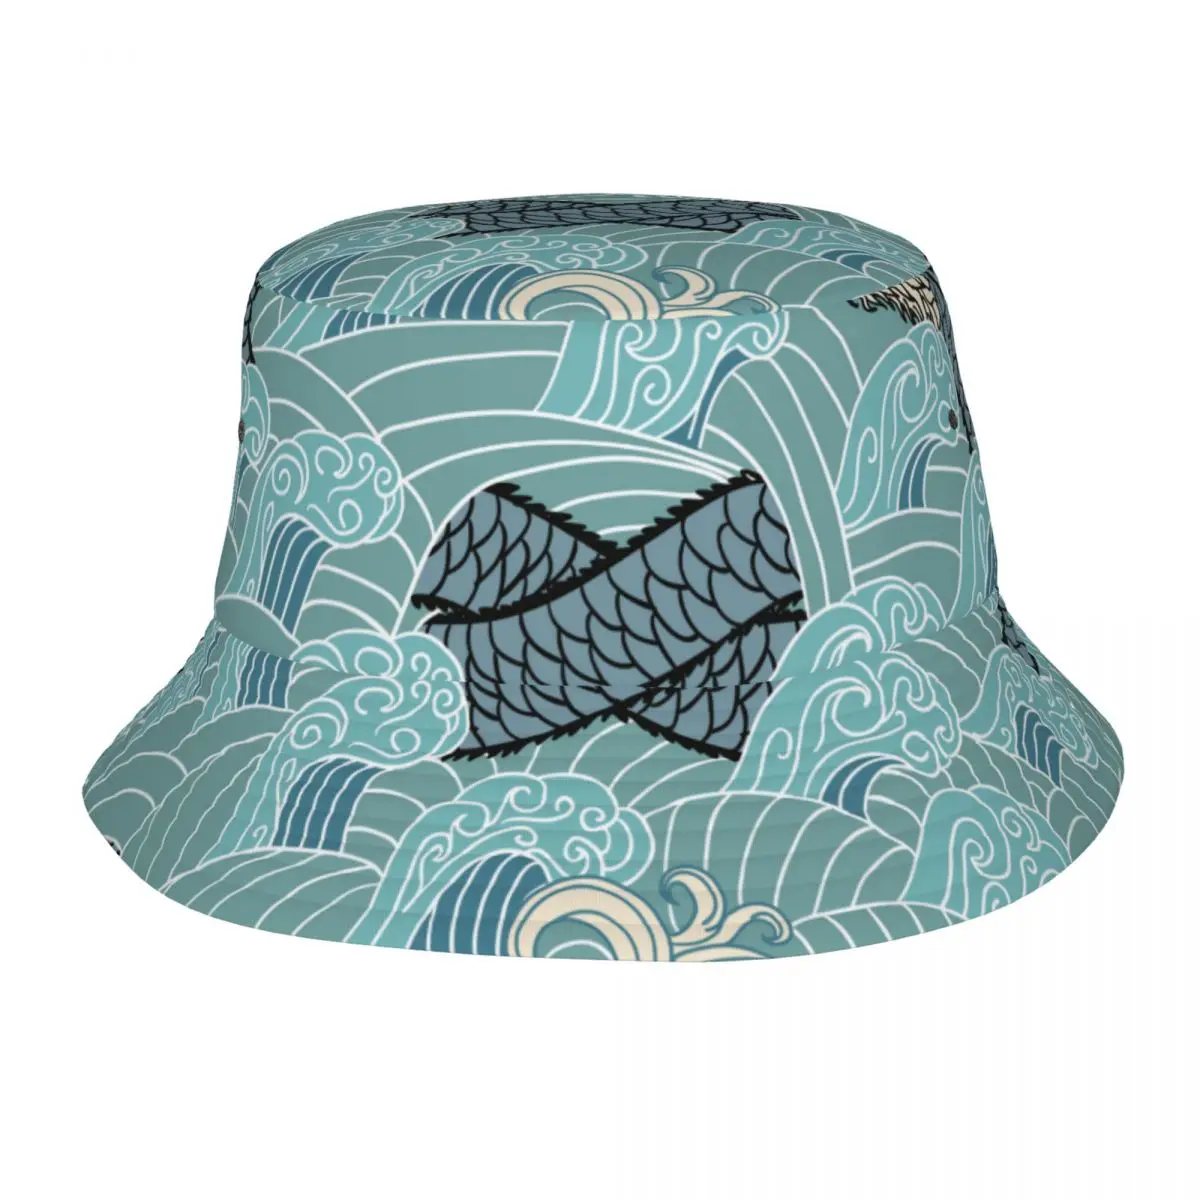 

Панама в стиле хип-хоп для мужчин и женщин, шляпа от солнца в стиле унисекс, с изображением азиатского дракона и волн, летняя